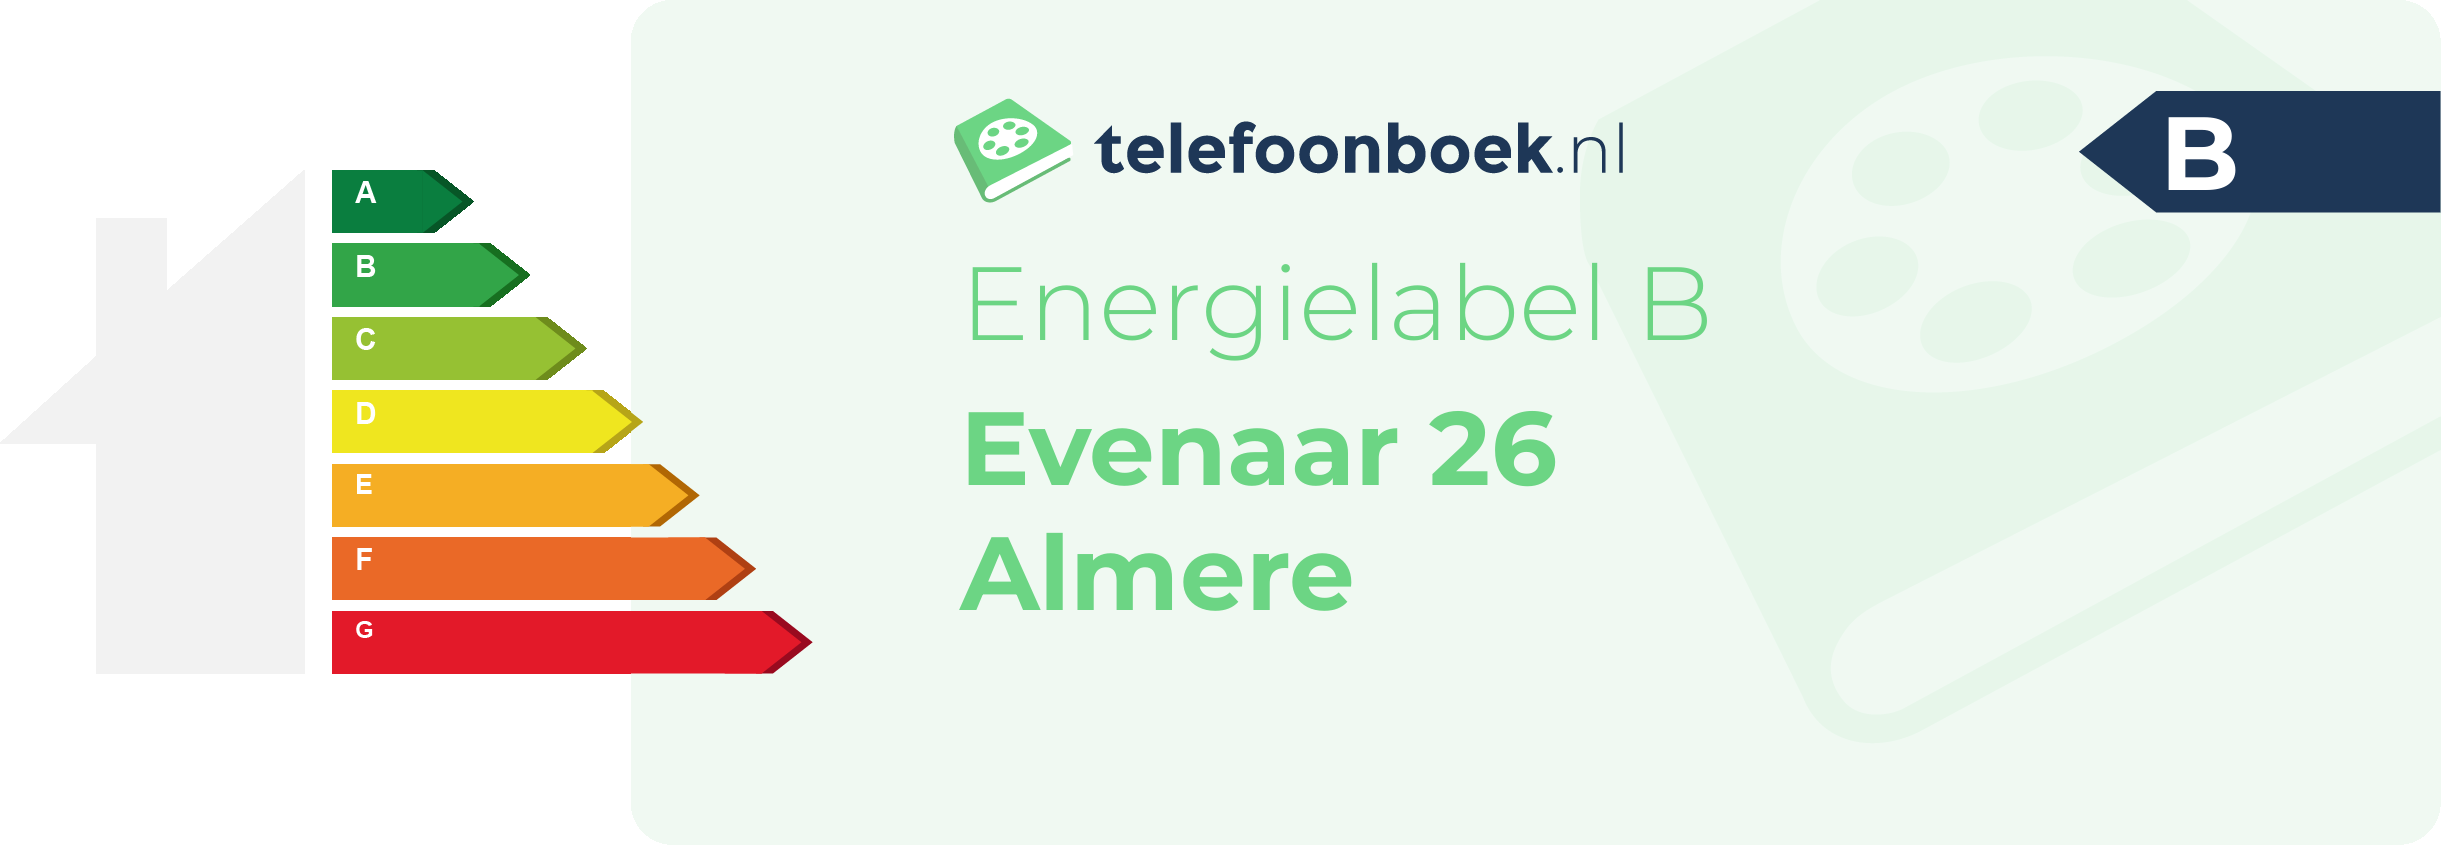 Energielabel Evenaar 26 Almere